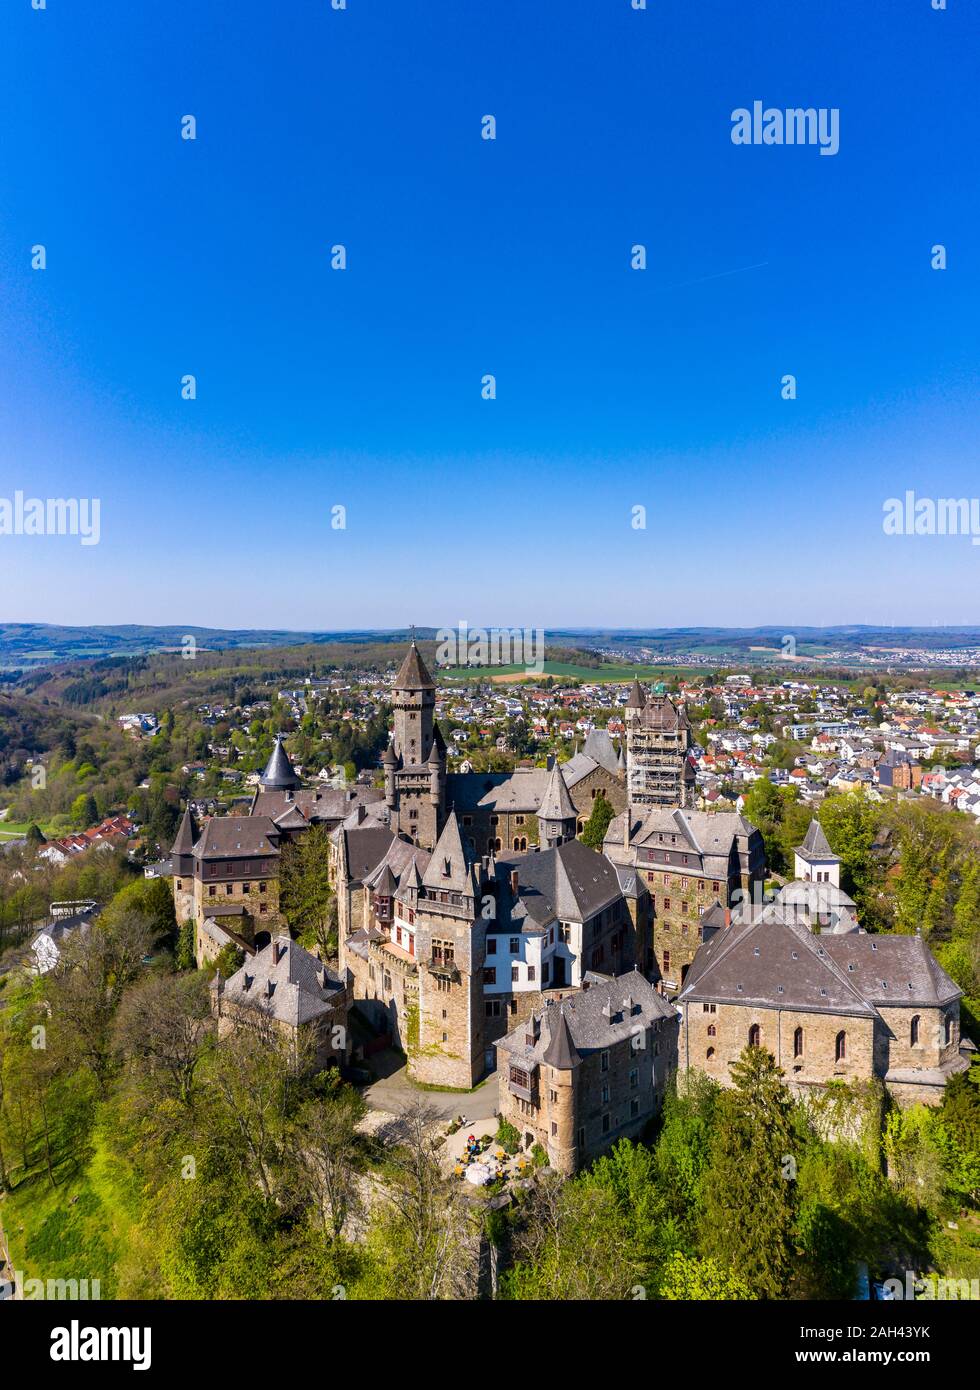 Alemania, Hesse, Braunfels, el azul claro del cielo sobre Schloss Braunfels Foto de stock